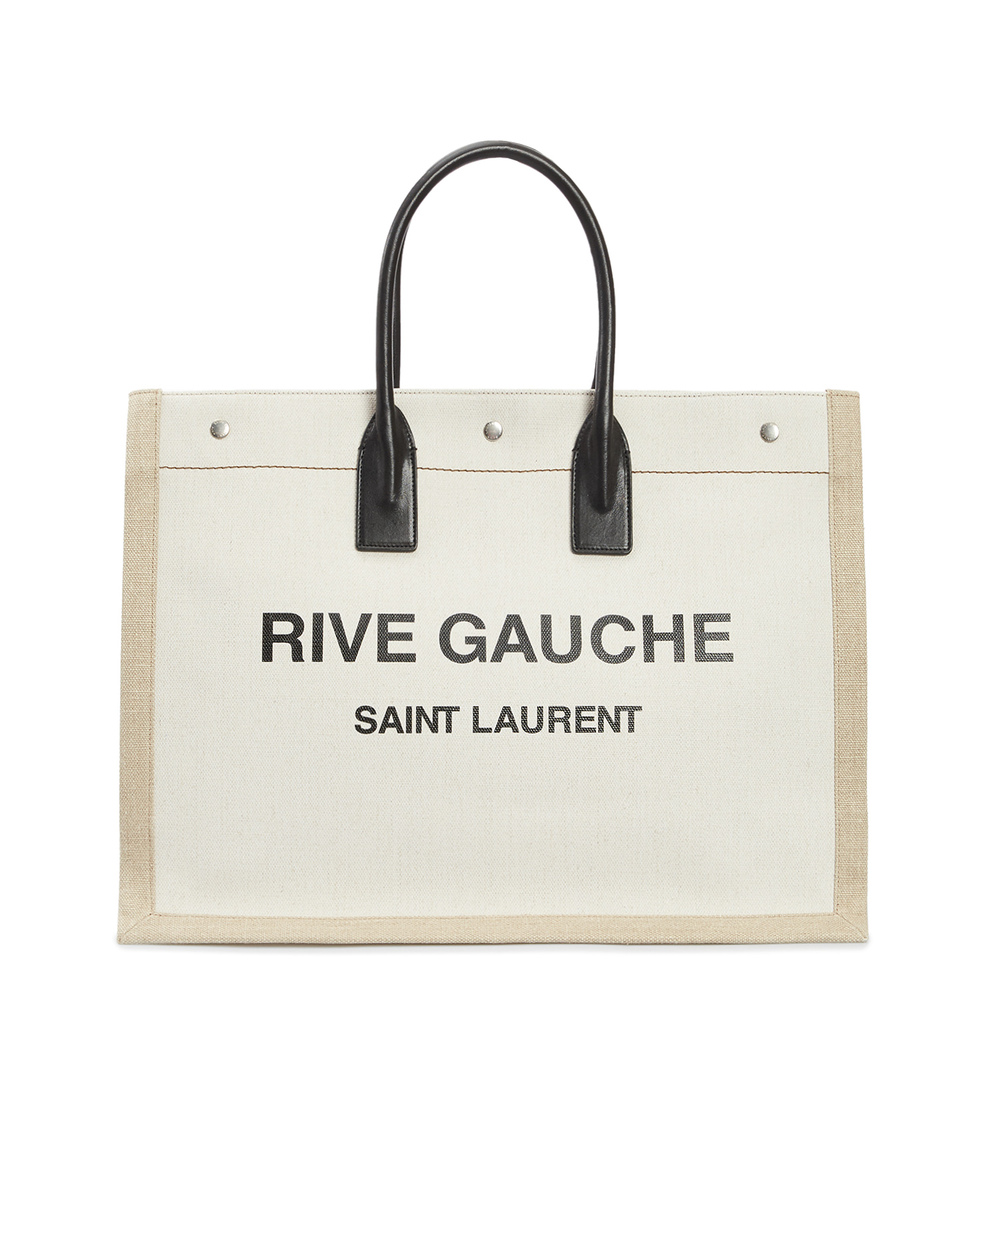 Льняная сумка Noe large Saint Laurent 509415-9J52E, белый цвет • Купить в интернет-магазине Kameron